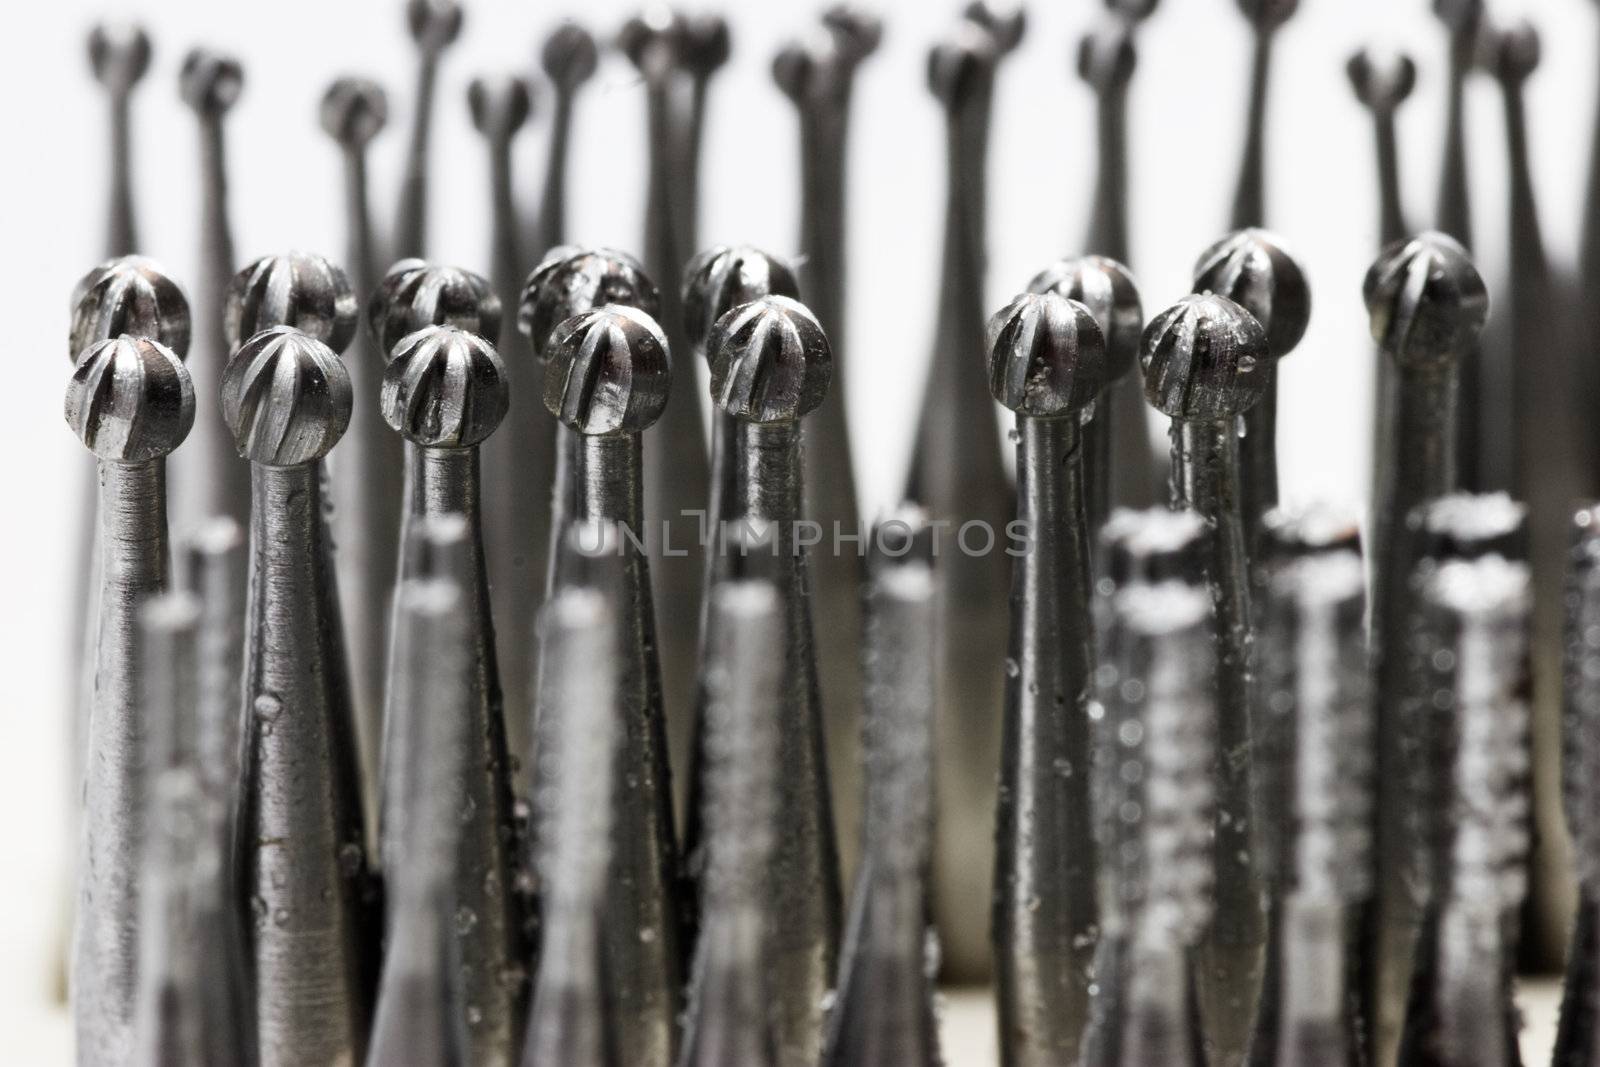 Set of dental drills closeup, selective focus